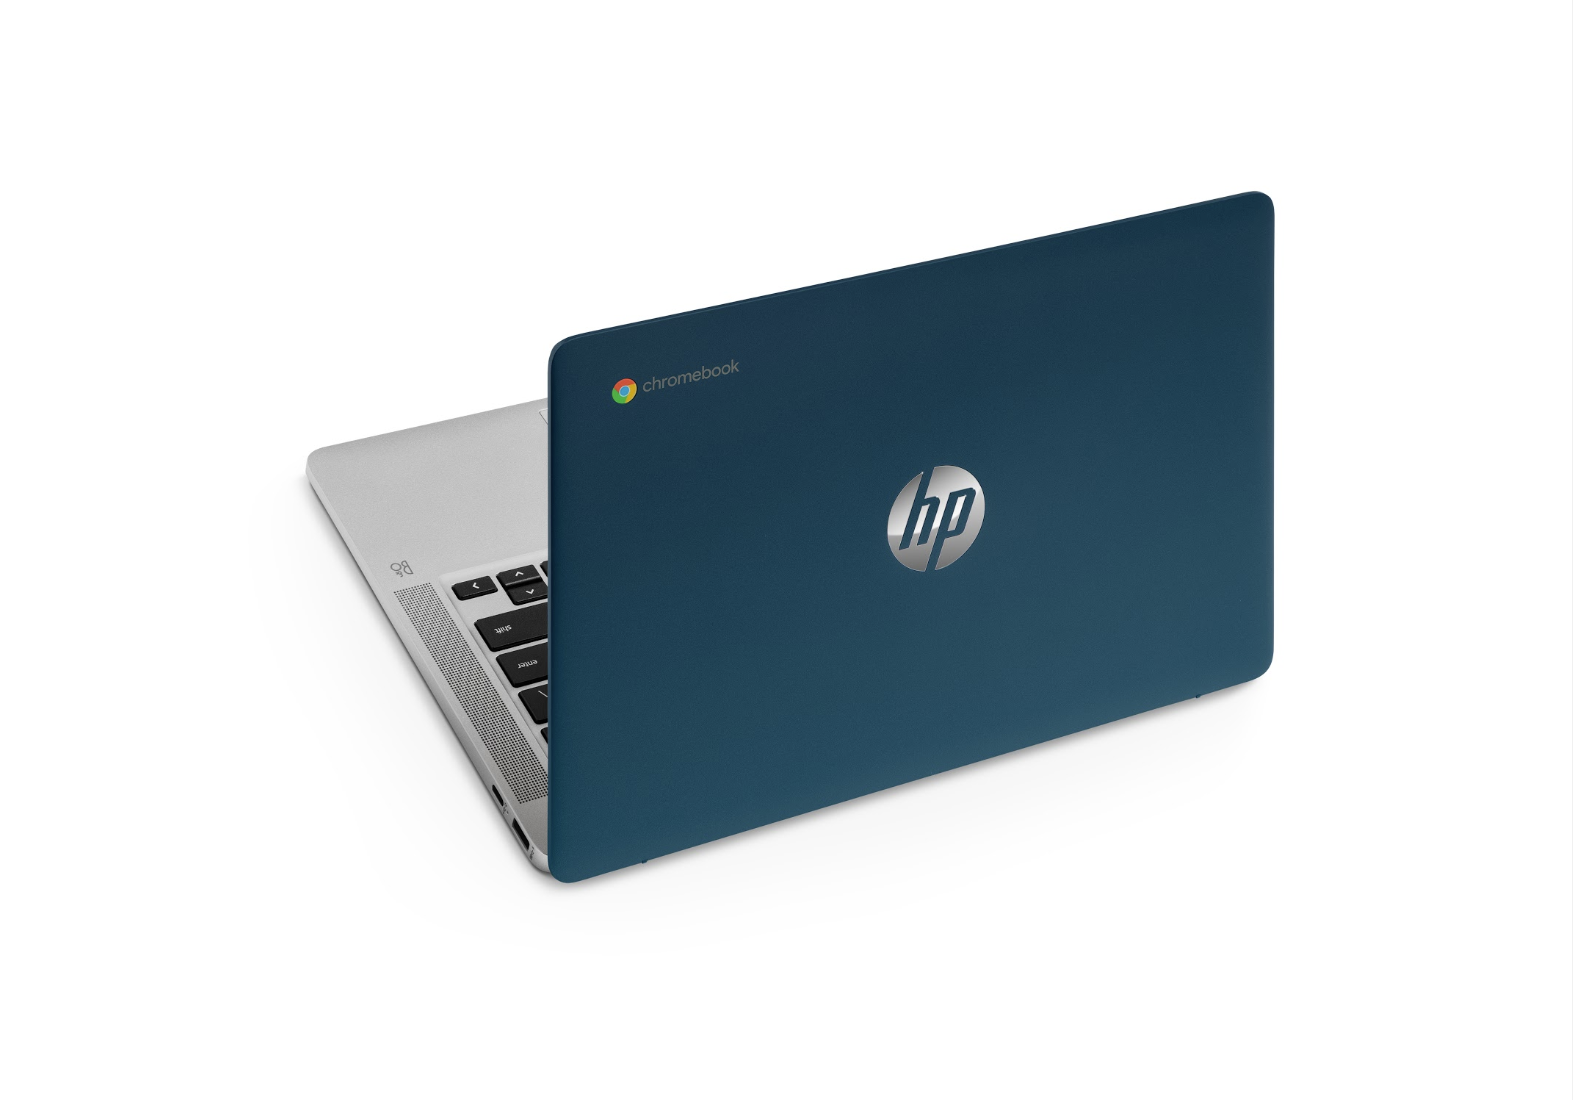 かぶ] 税込39,800円。2020年の14インチ国内スタンダードモデルになるか。HP Chromebook 14aがAmazon限定カラーで発売開始。